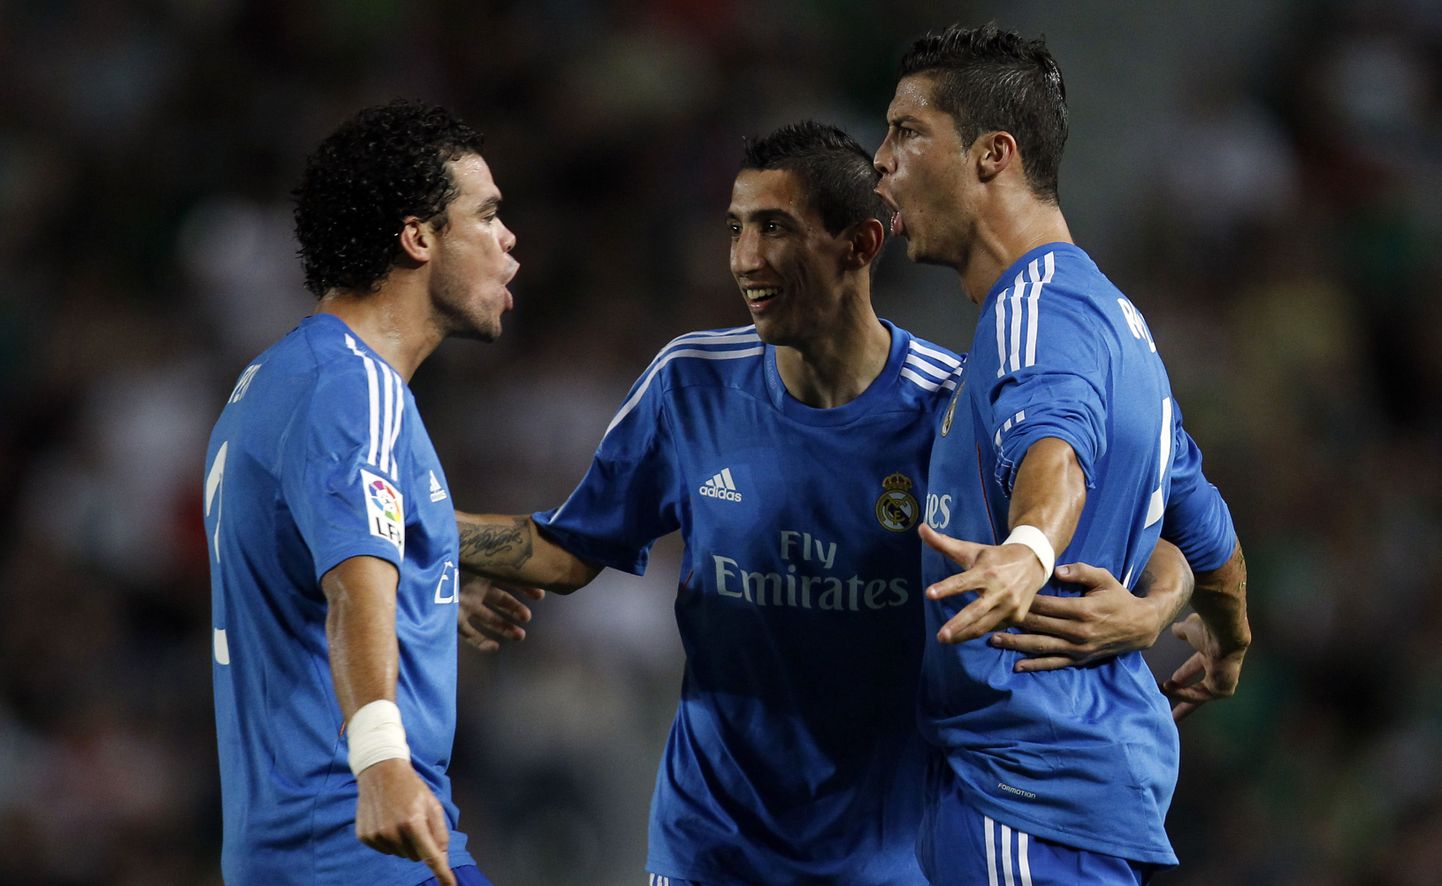 Madridi Reali mängijad tähistamas Elche vastu löödud väravat.